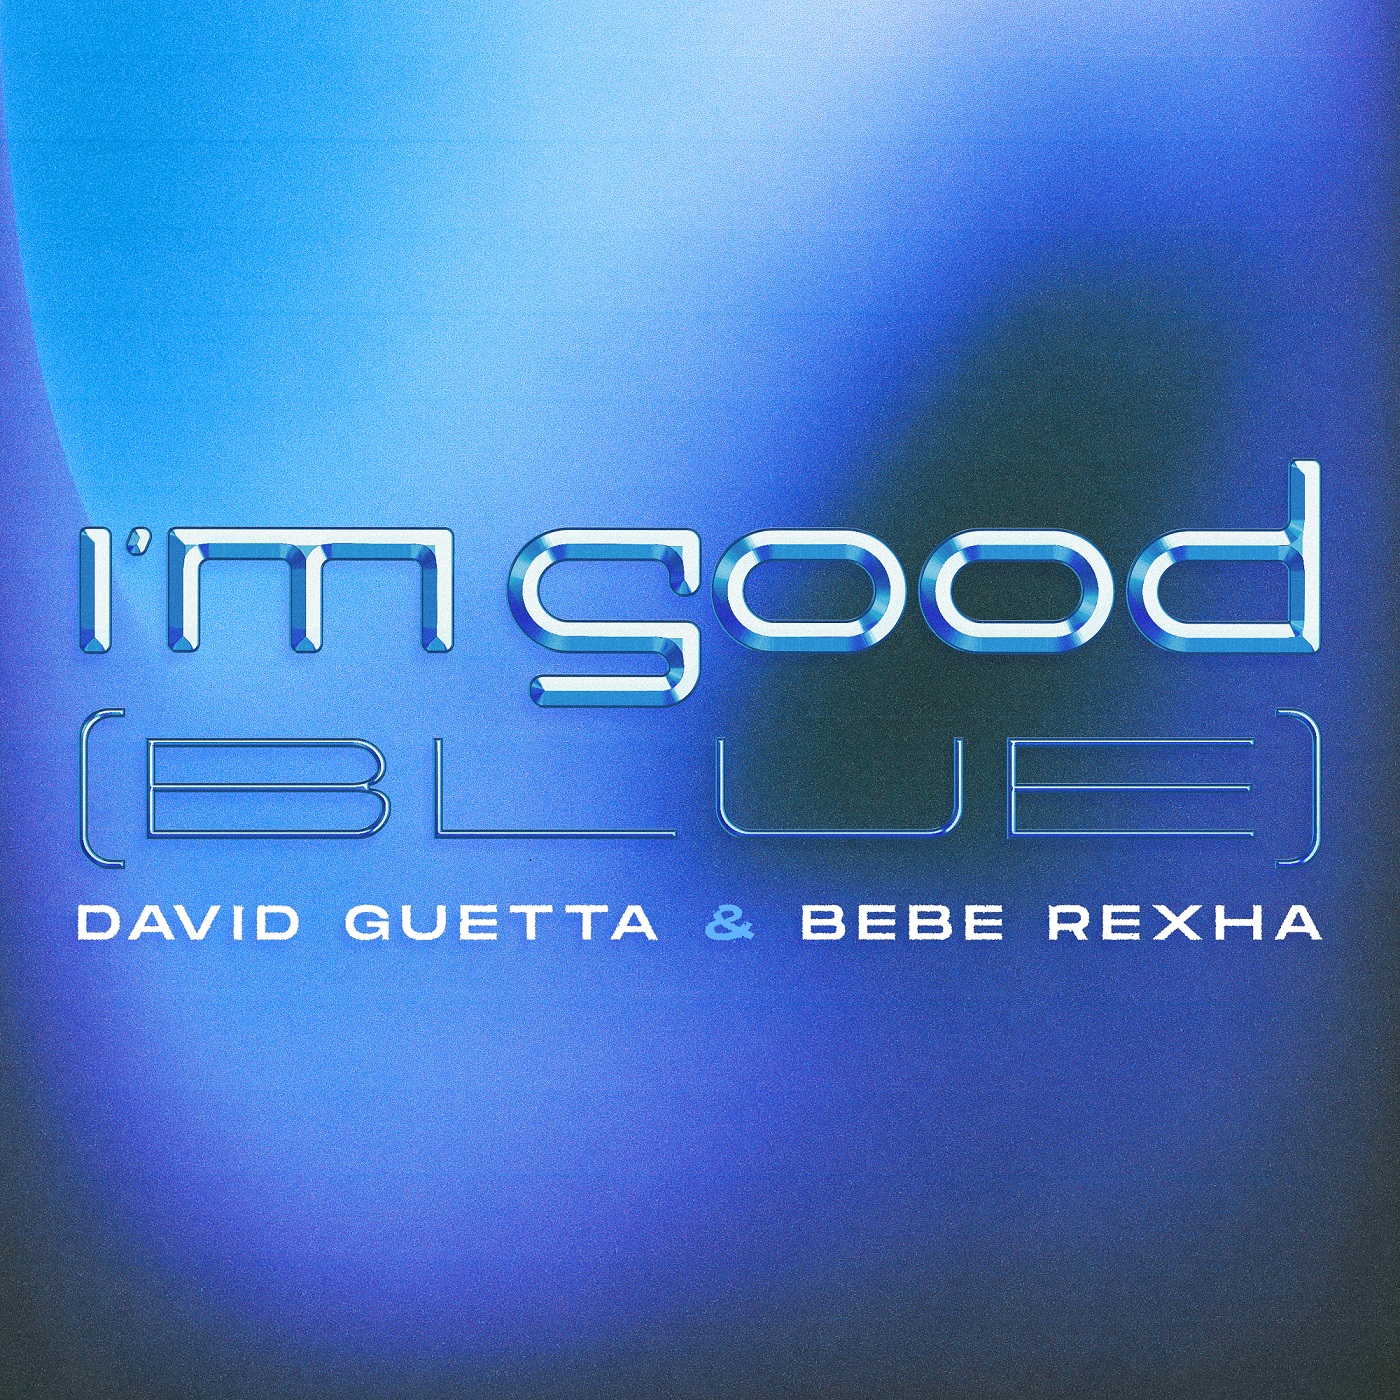 David Guetta - I m good ( Blue) (feat Bebe Rexha)